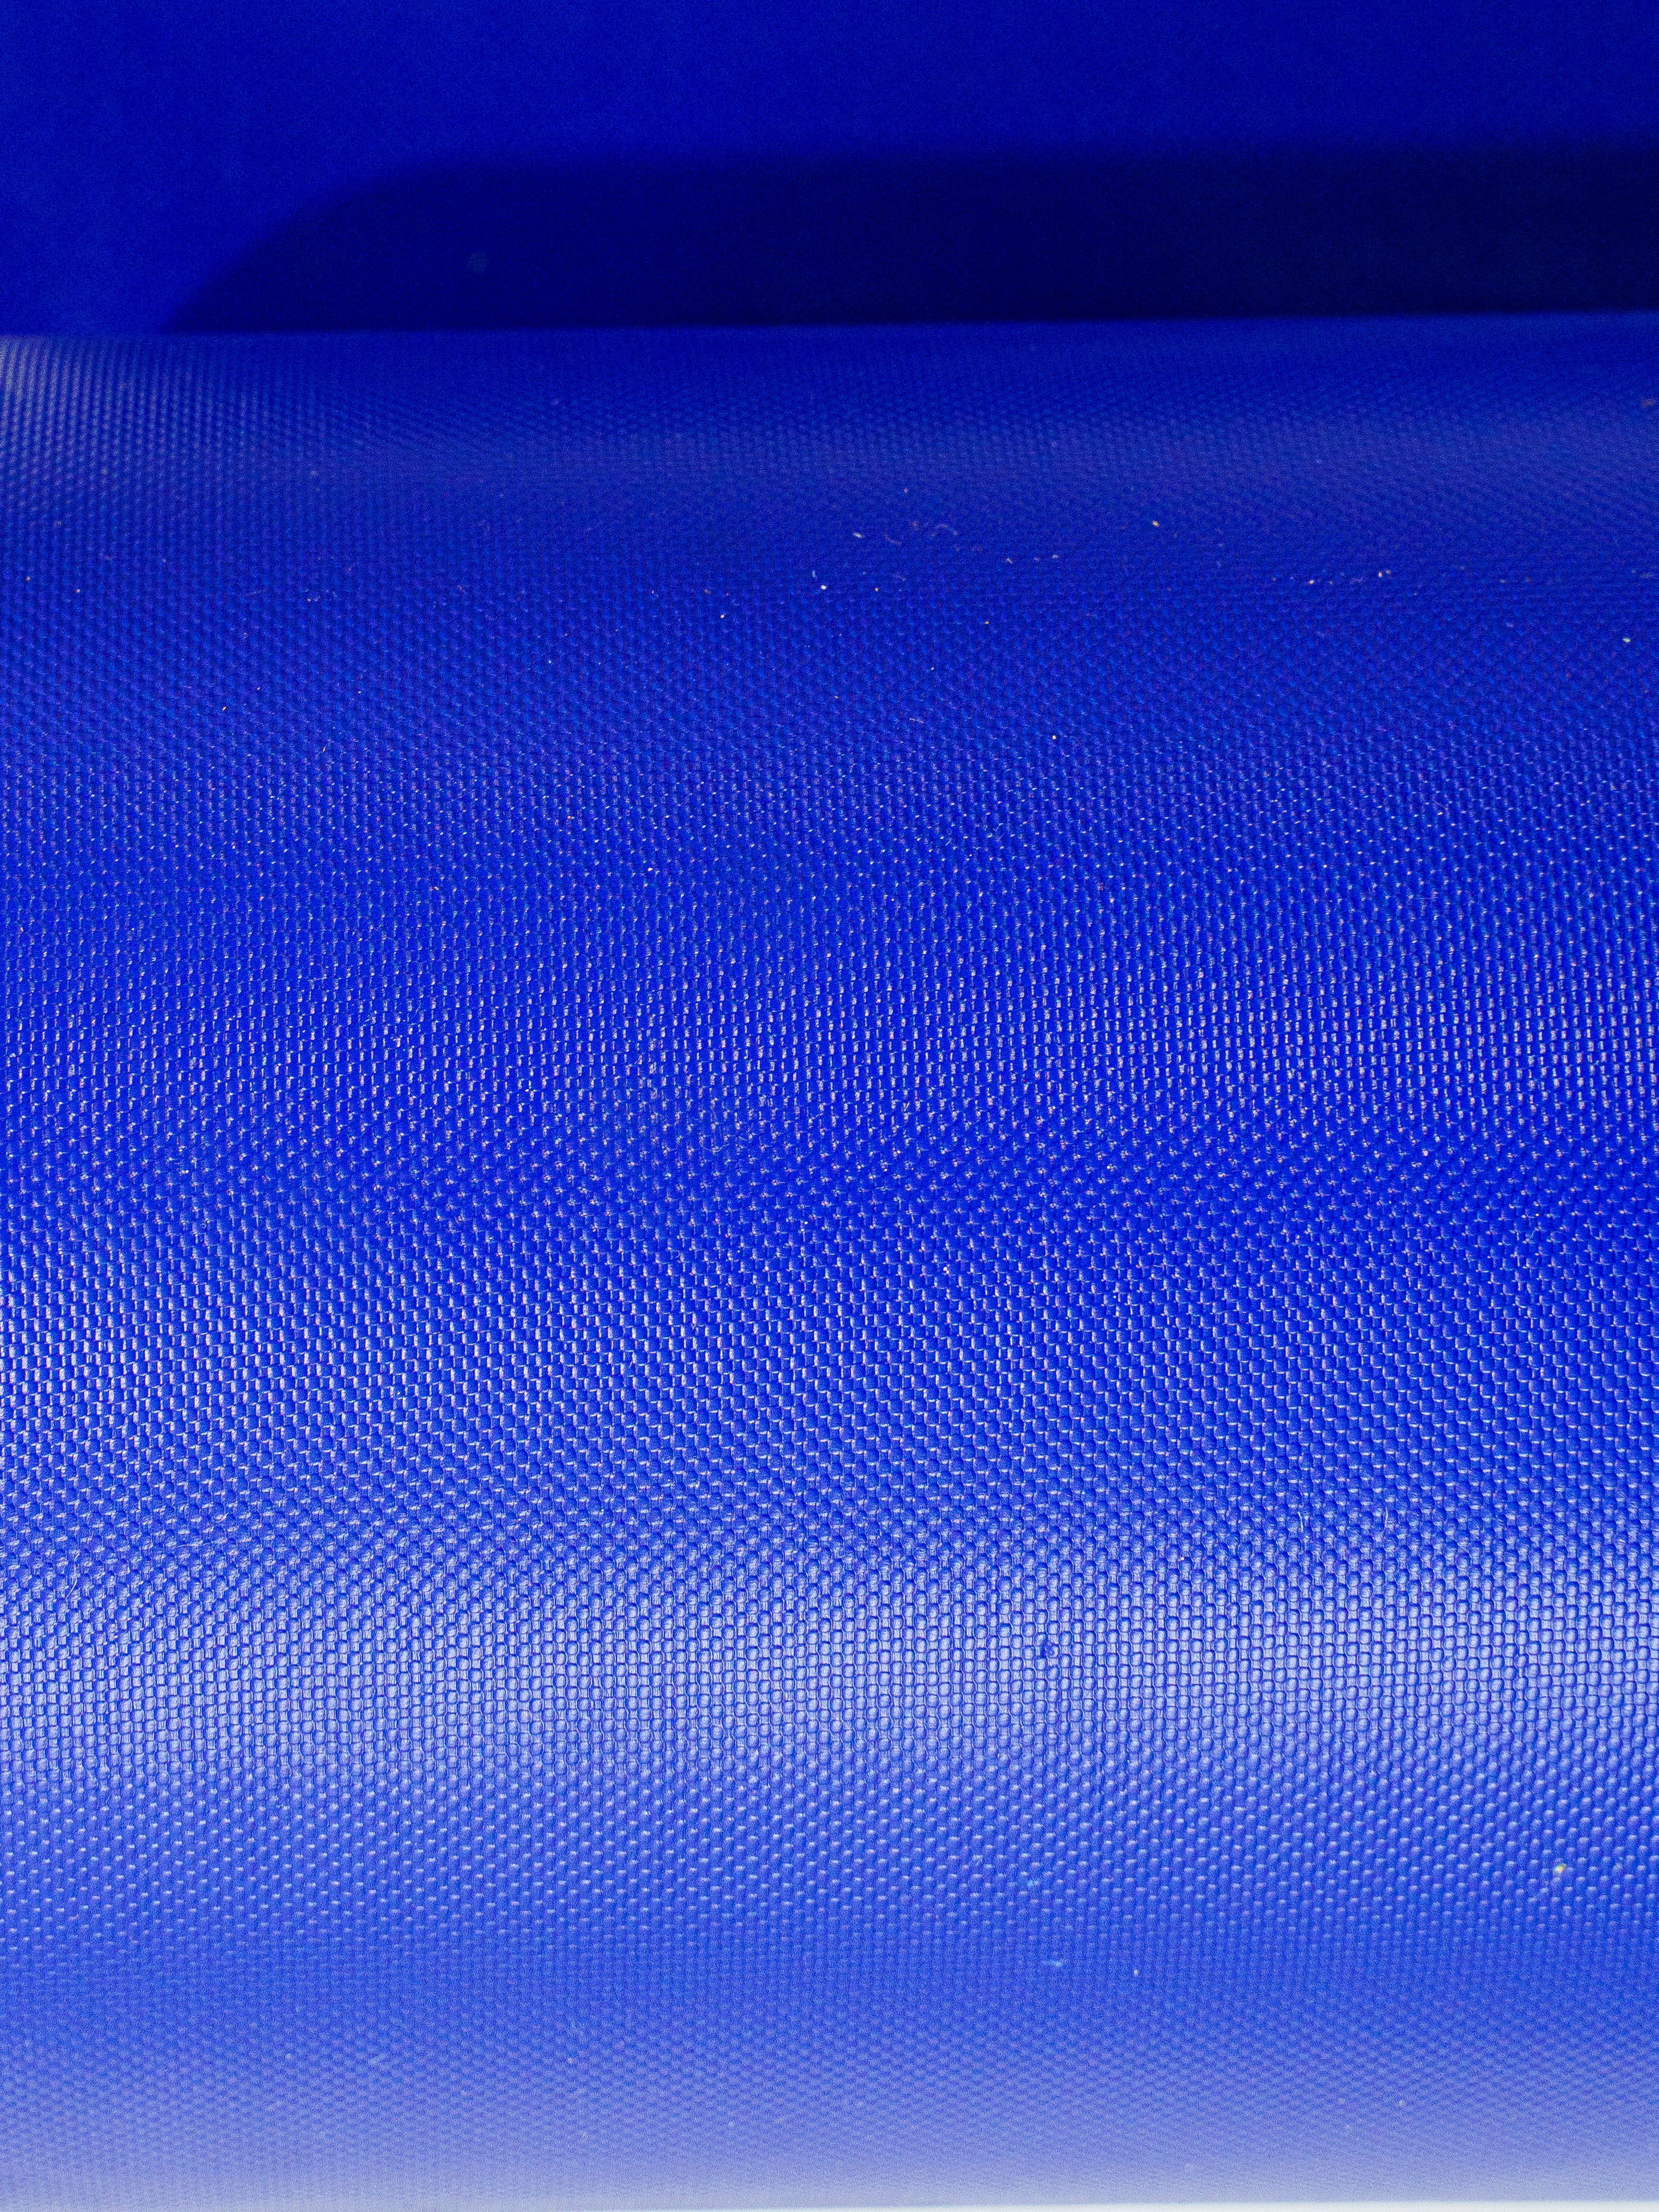 Пленка пвх голубая. Плёнка ПВХ тонированная синяя. Стеновой протектор стандарт 30мм ПВХ-ткань 630гр/м2 НПЭ 22кг/м3. Ткань ПВХ голубая -. Стеновой протектор стандарт 30мм ПВХ-ткань 630гр/м2 НПЭ 22кг/м3 цена.